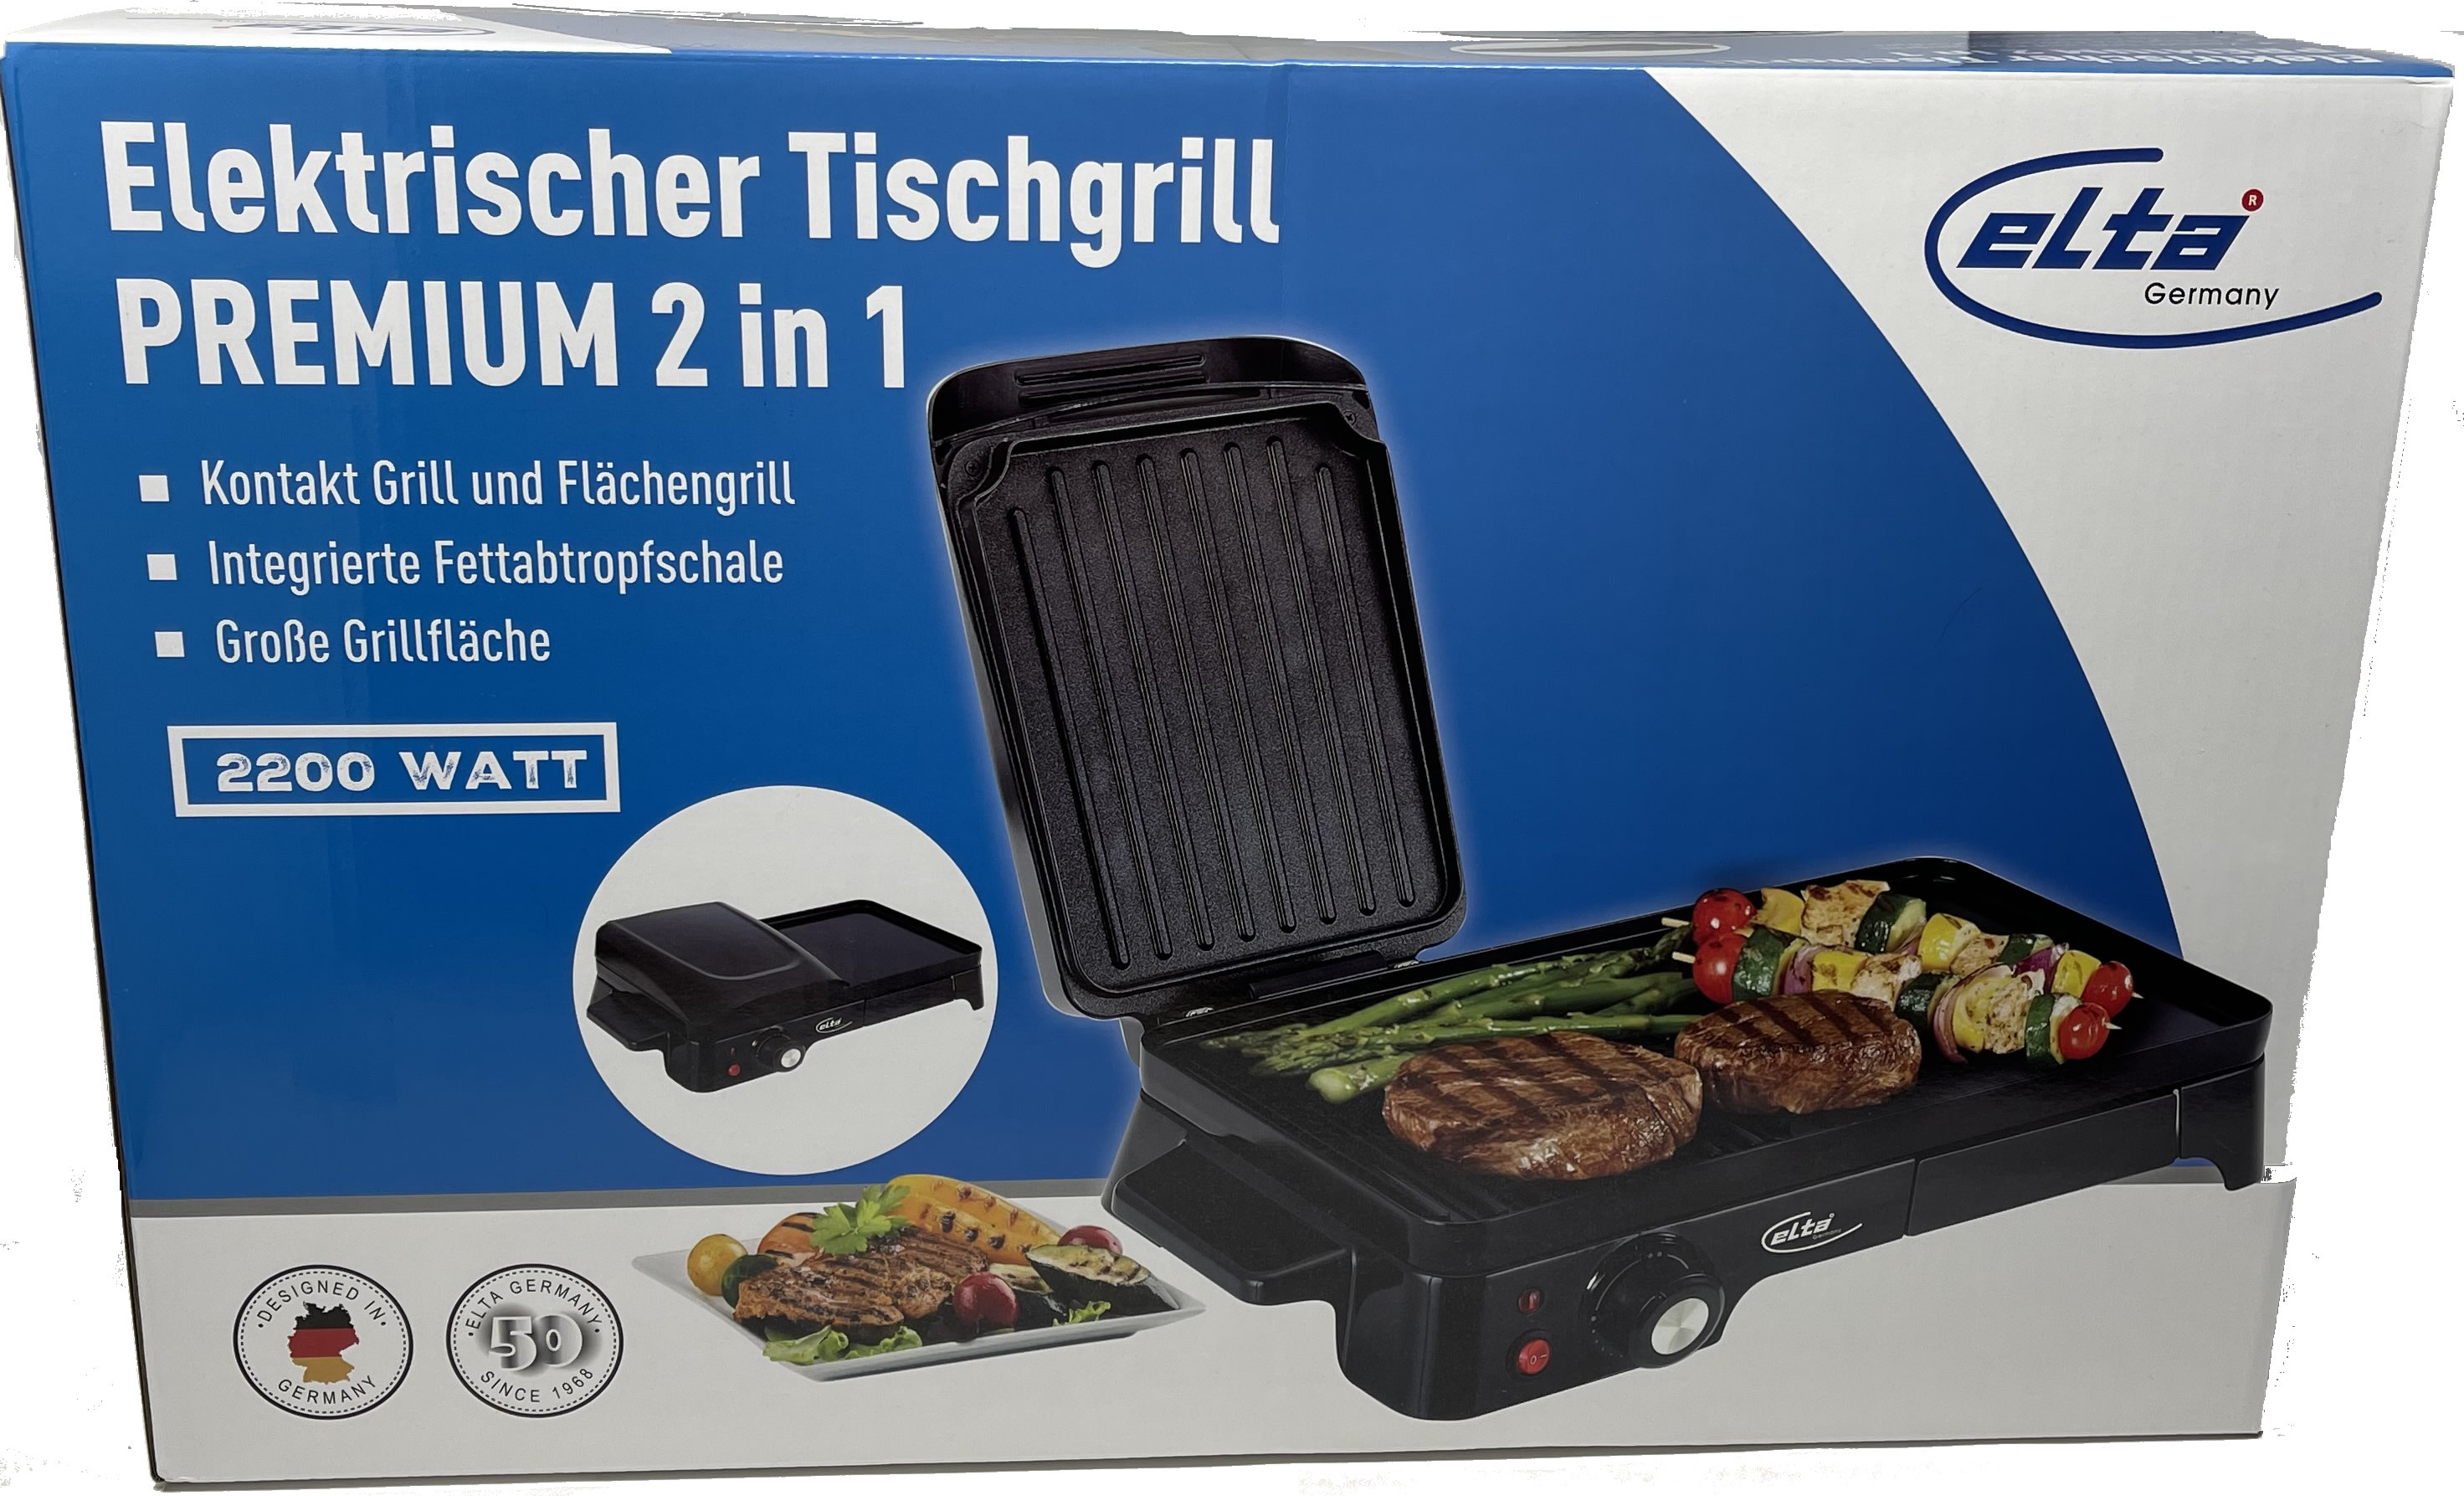 Elta Elektrischer Tischgrill Premium 2in1